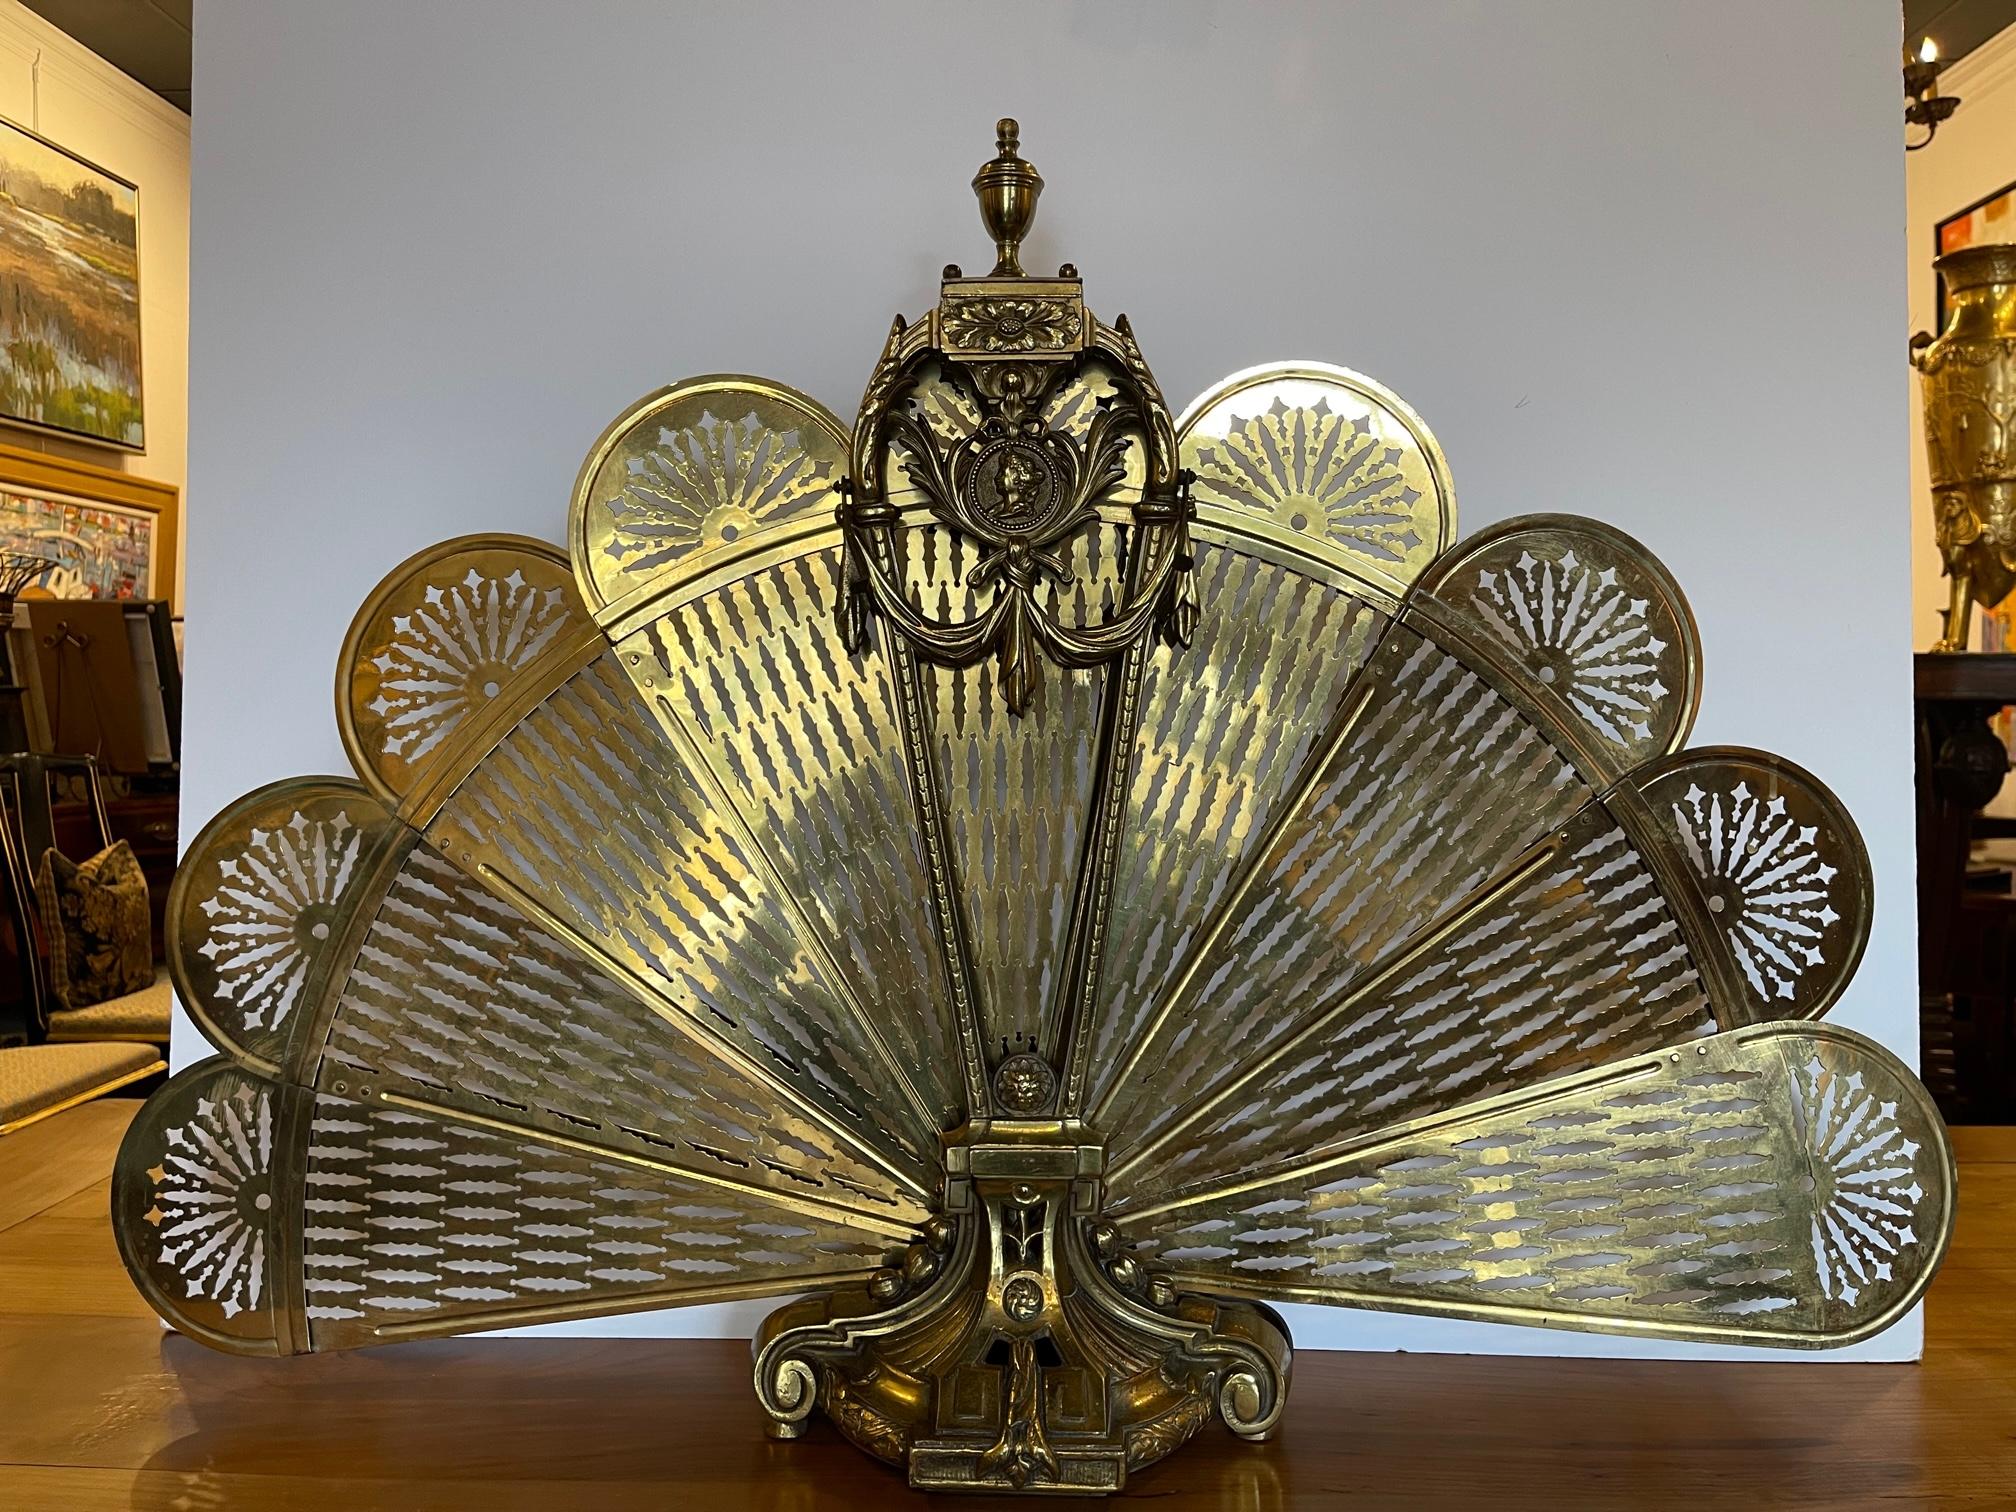 Polished brass fan fire screen, 19th century.